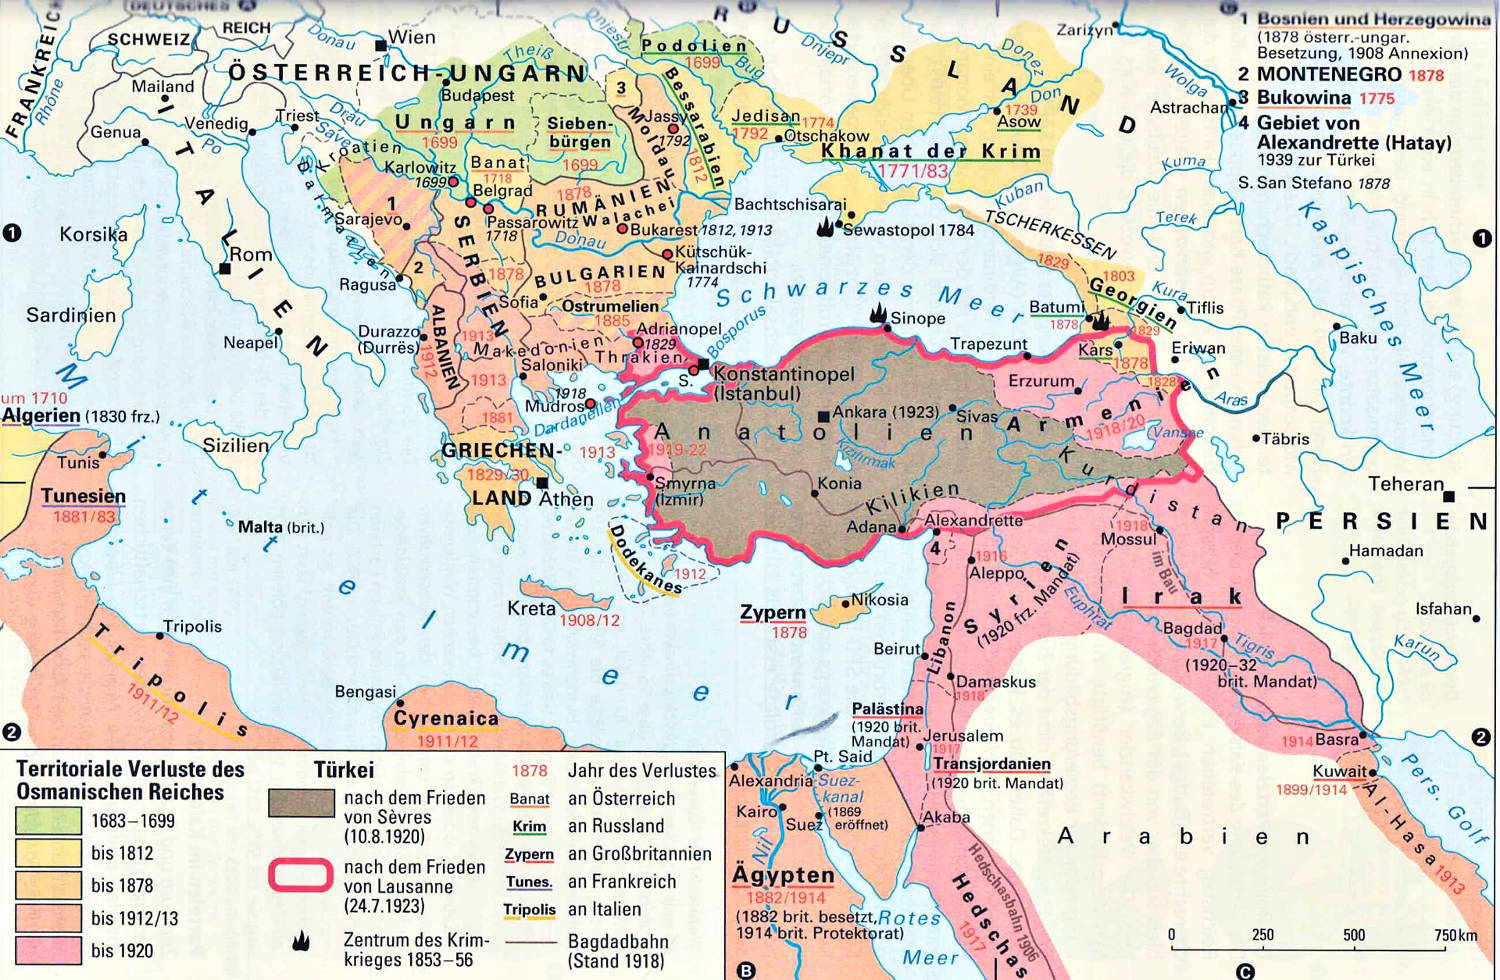 Das Osmanische Reich im 19. Jahrhundert